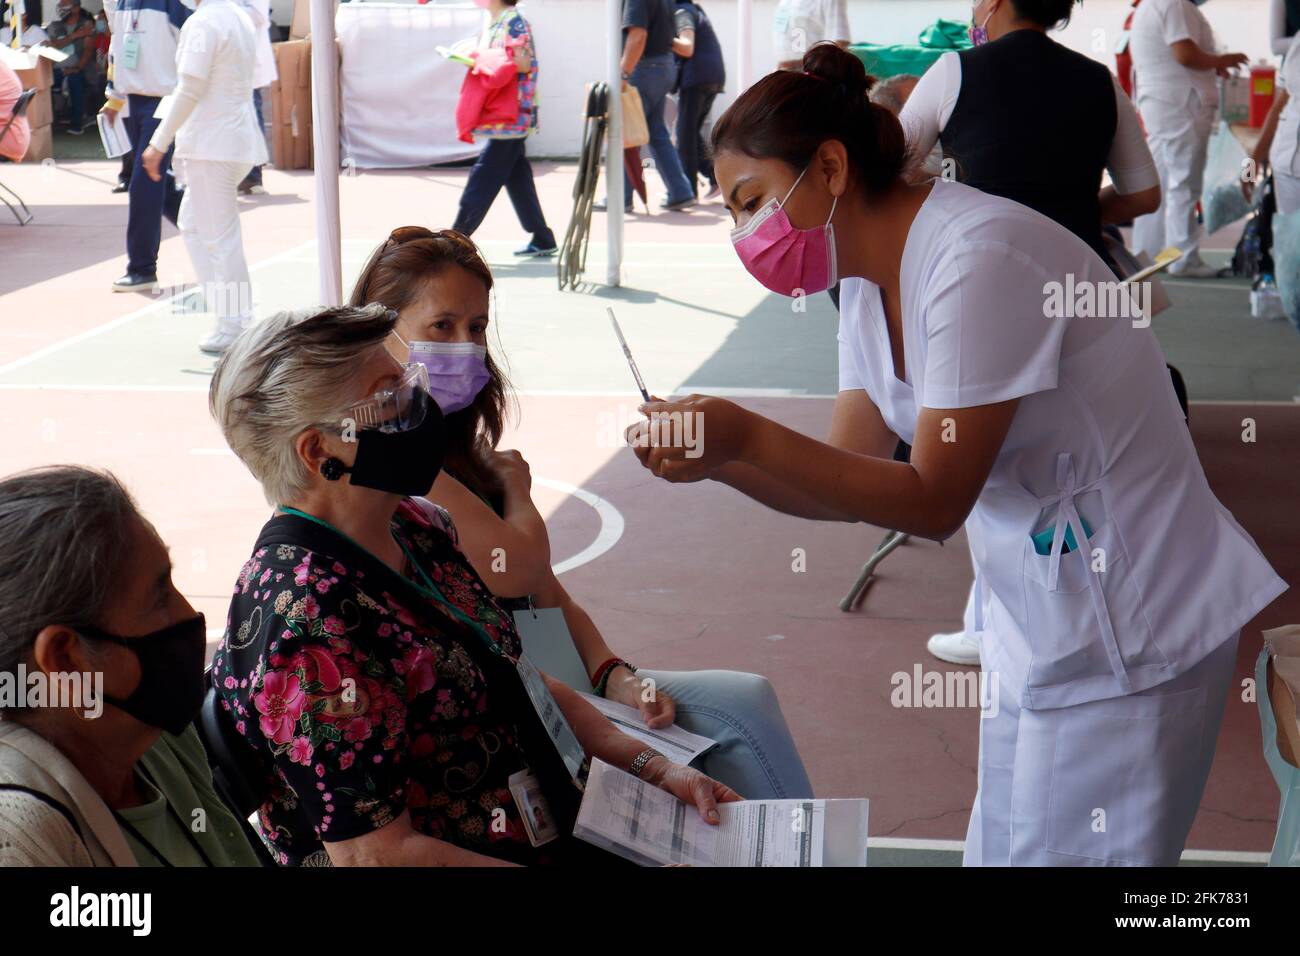 Nicht exklusiv: MEXIKO-STADT, MEXIKO - 28. APRIL: Ein älterer Bürger erhält die zweite Dosis des Impfstoffes Covid-19 Sputnik V während einer Massenimpfung gegen Peop Stockfoto